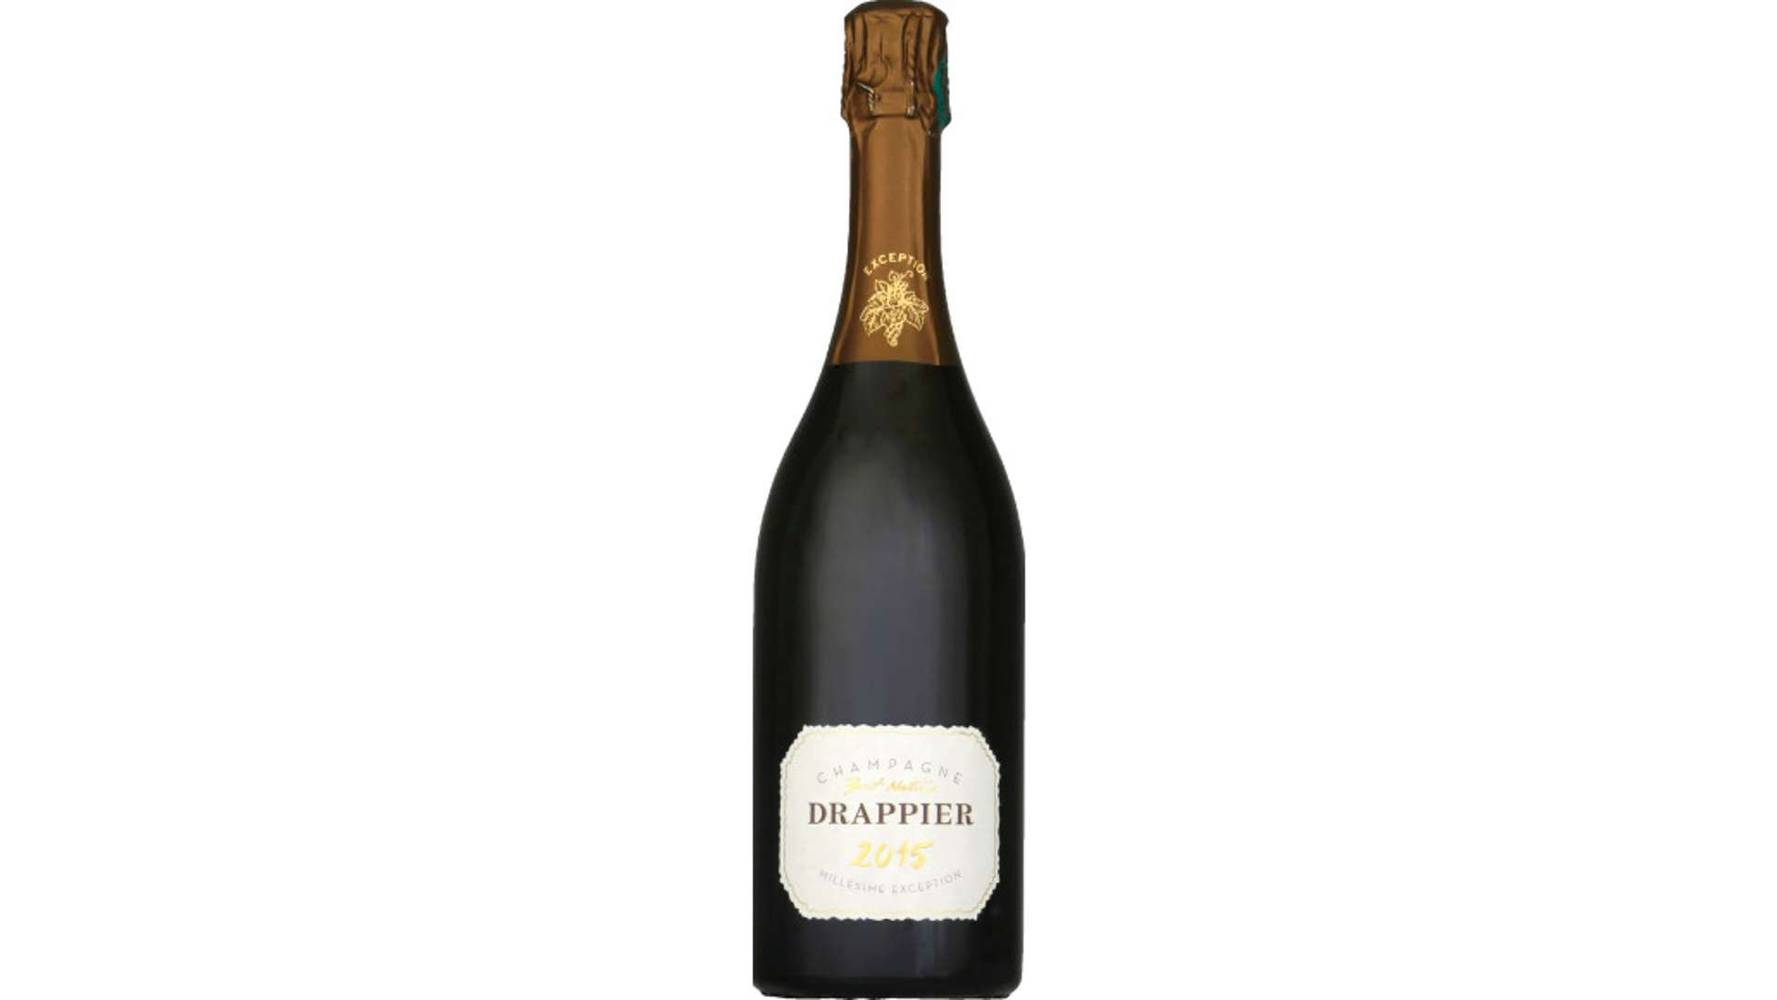 Drappier Champagne AOP, Brut La bouteille de 75cl avec etui